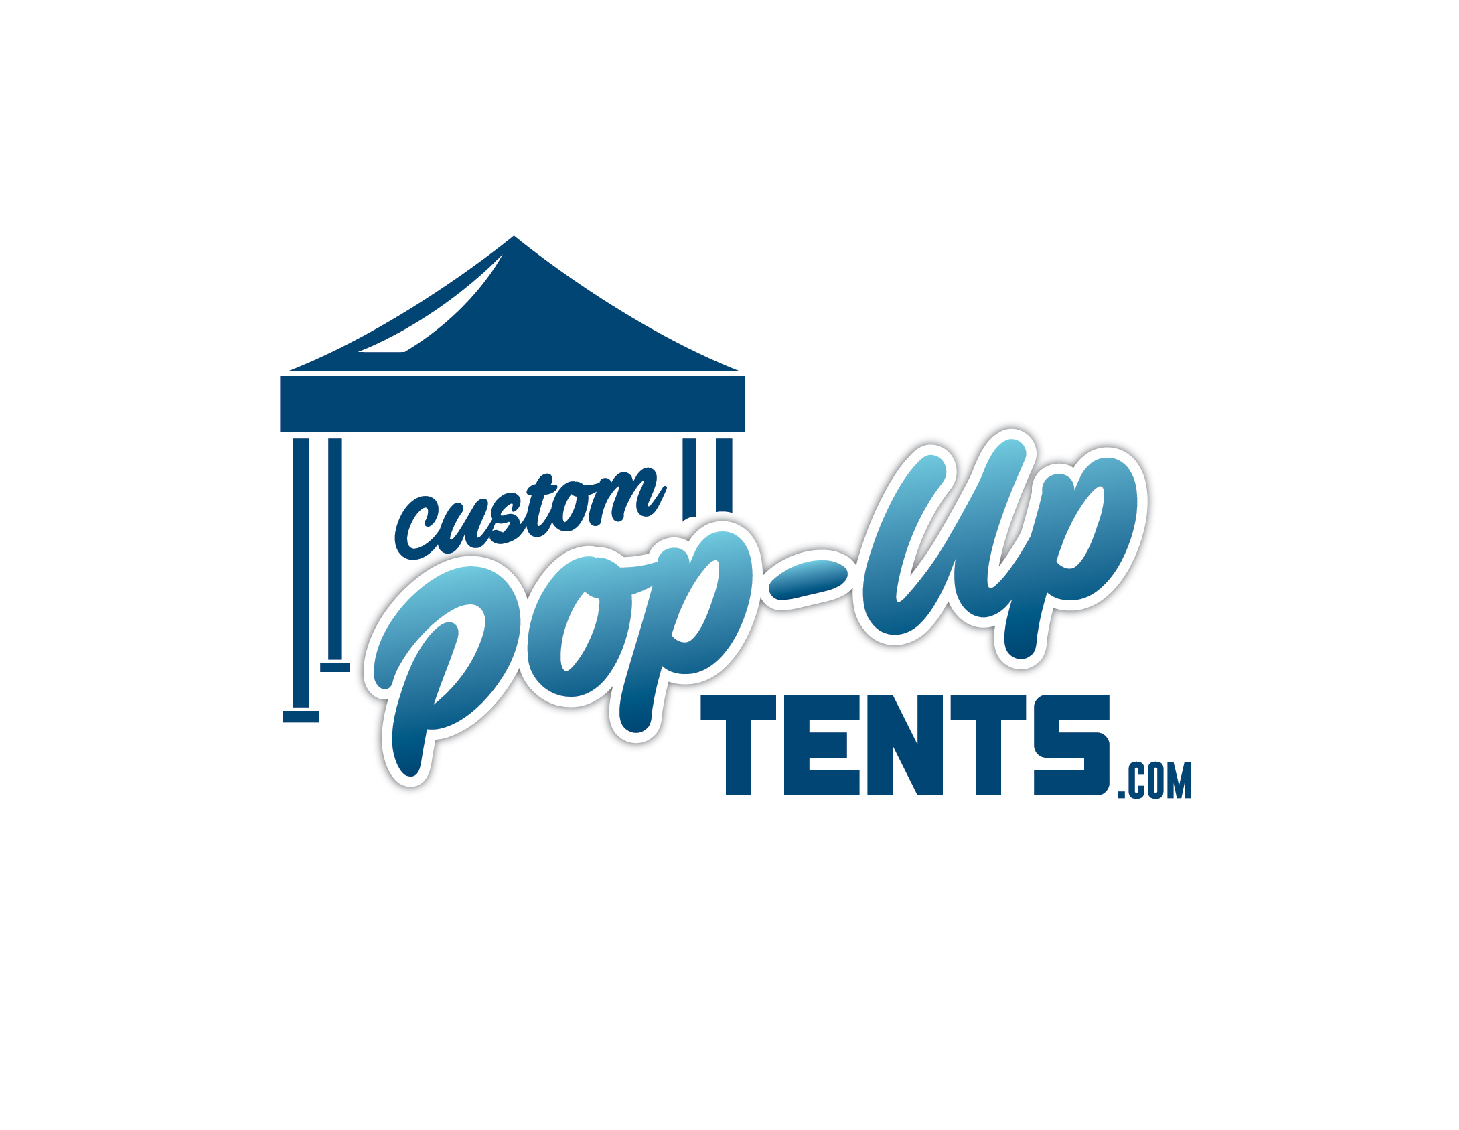 Custom Pop-up Tents